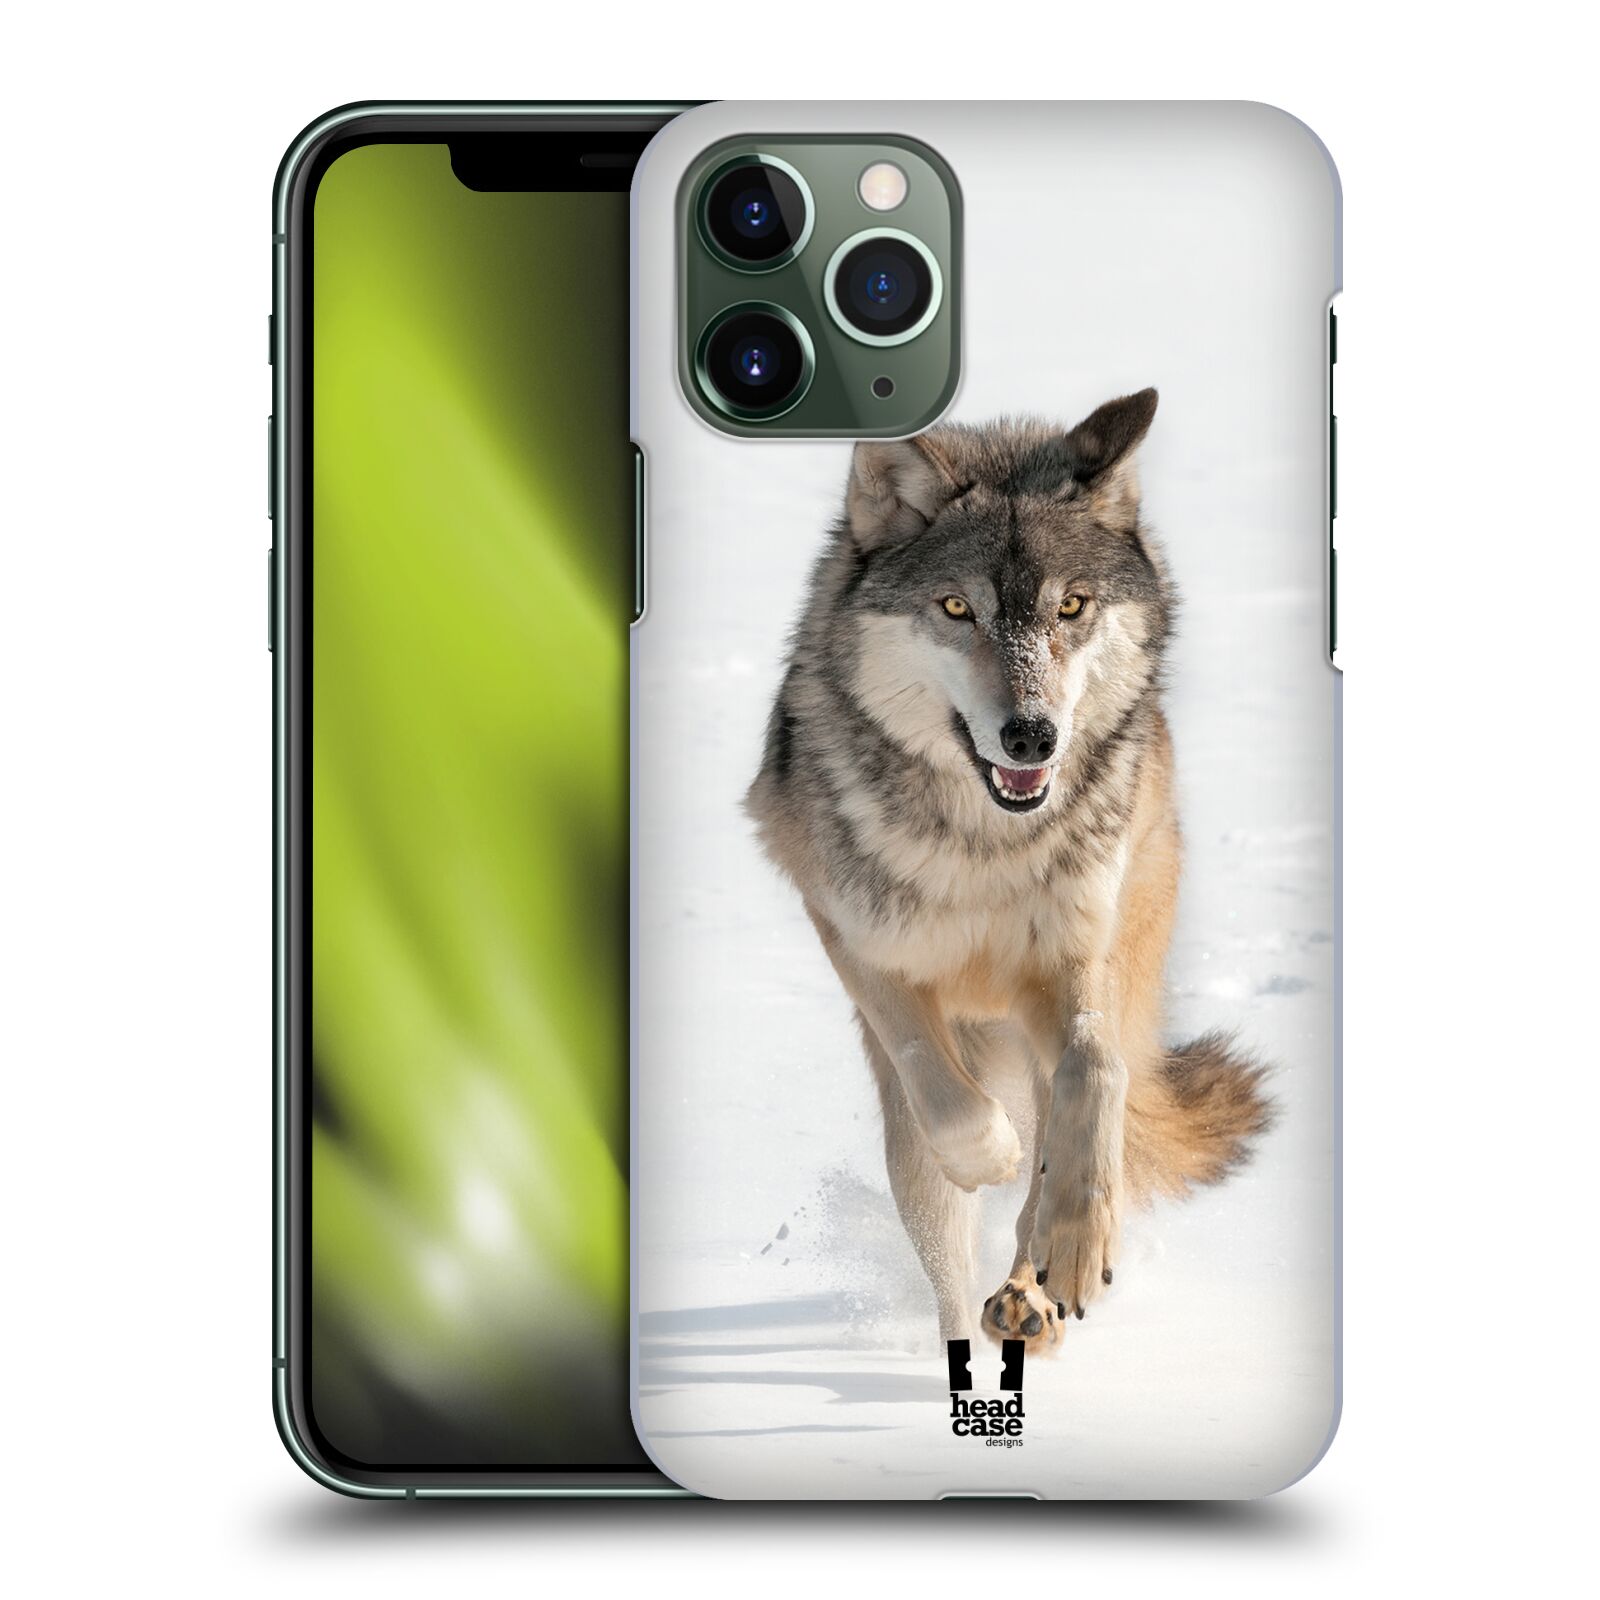 Pouzdro na mobil Apple Iphone 11 PRO - HEAD CASE - vzor Divočina, Divoký život a zvířata foto BĚŽÍCÍ VLK